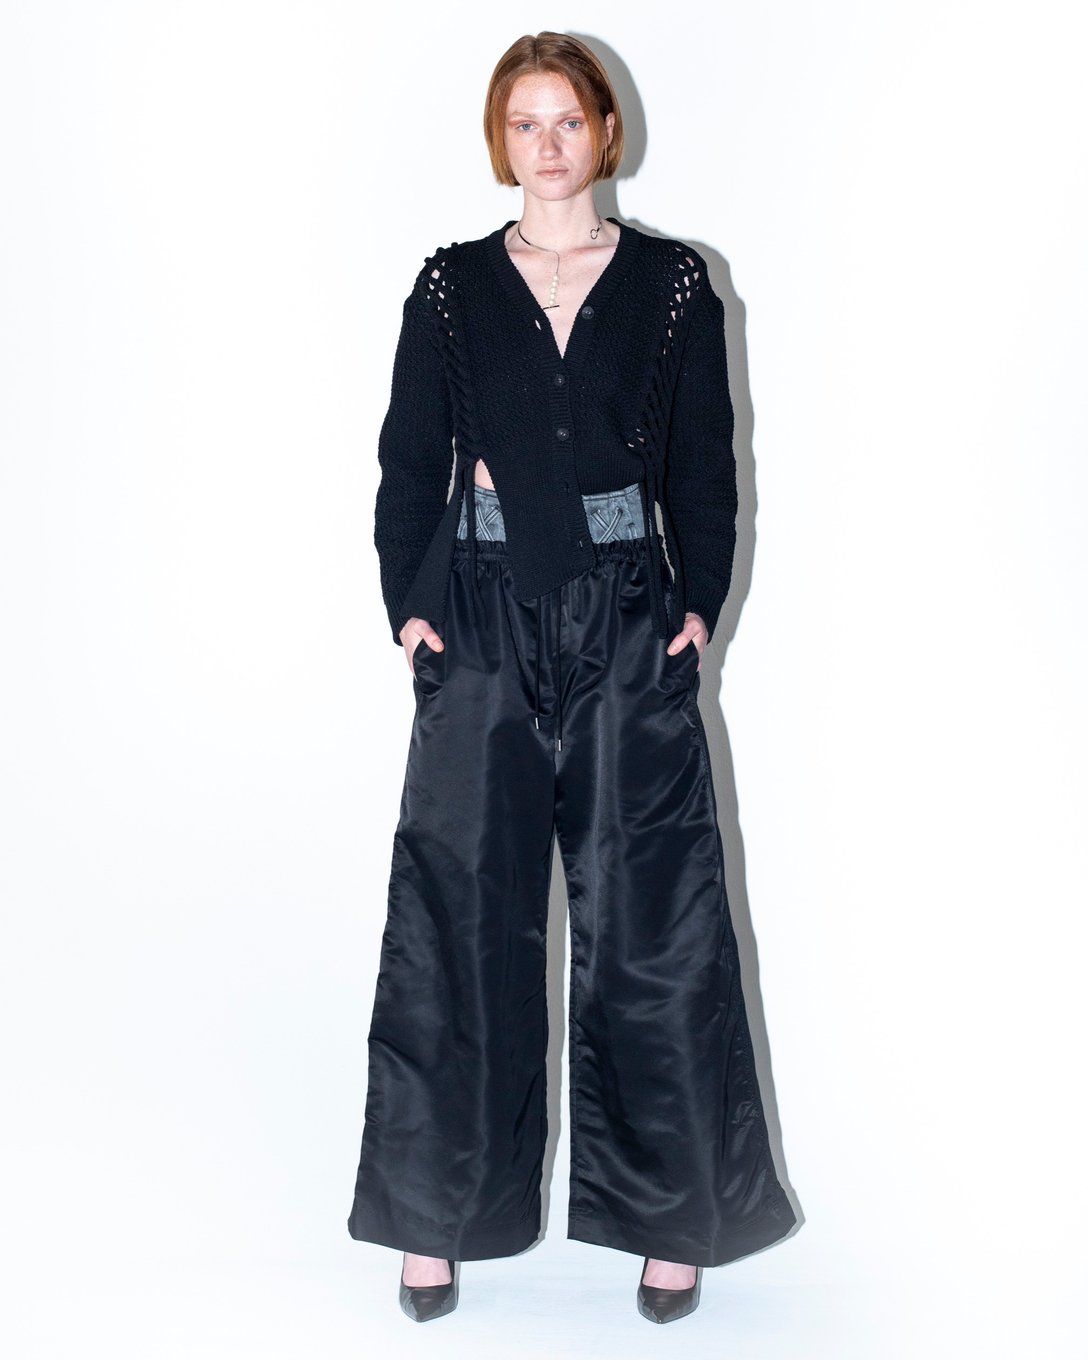 ニットカーディガンとブラックのボトムスを着用した女性のルック画像